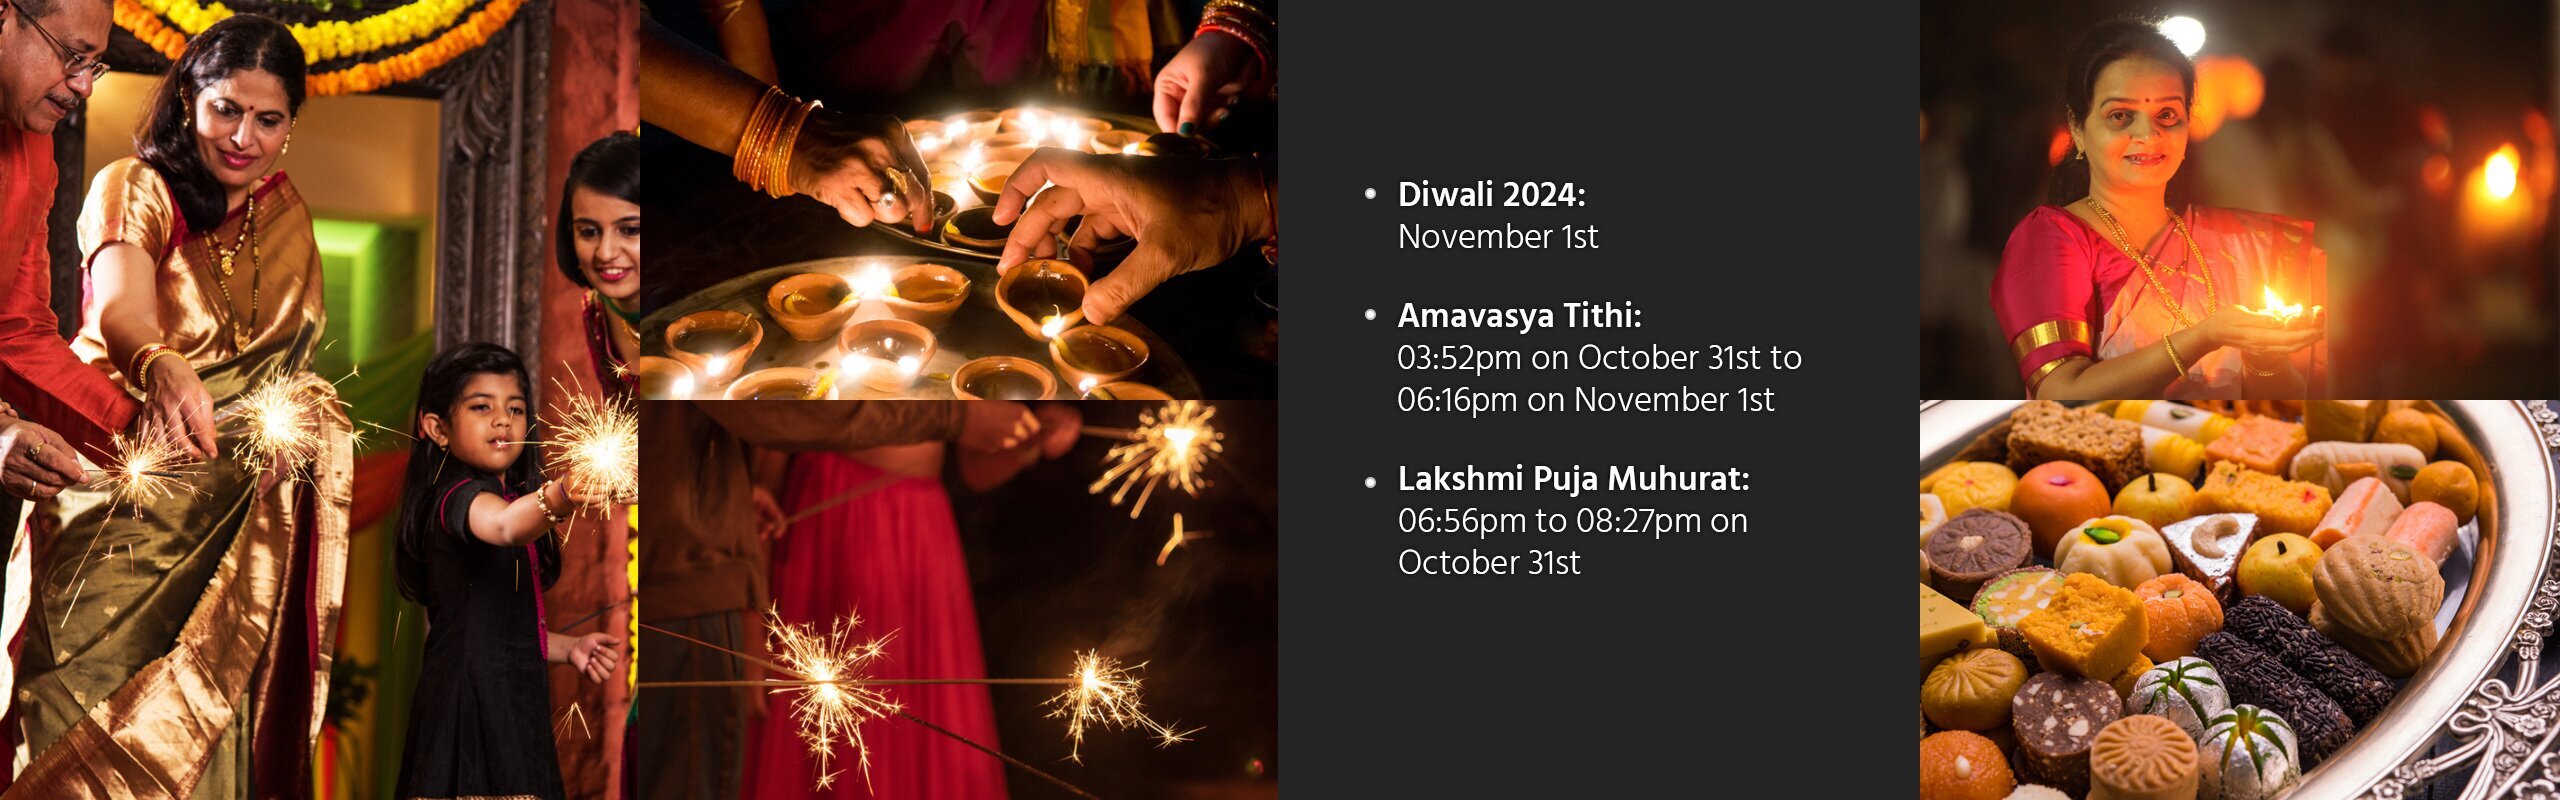 Diwali (Deepavali) - Festival of Lights